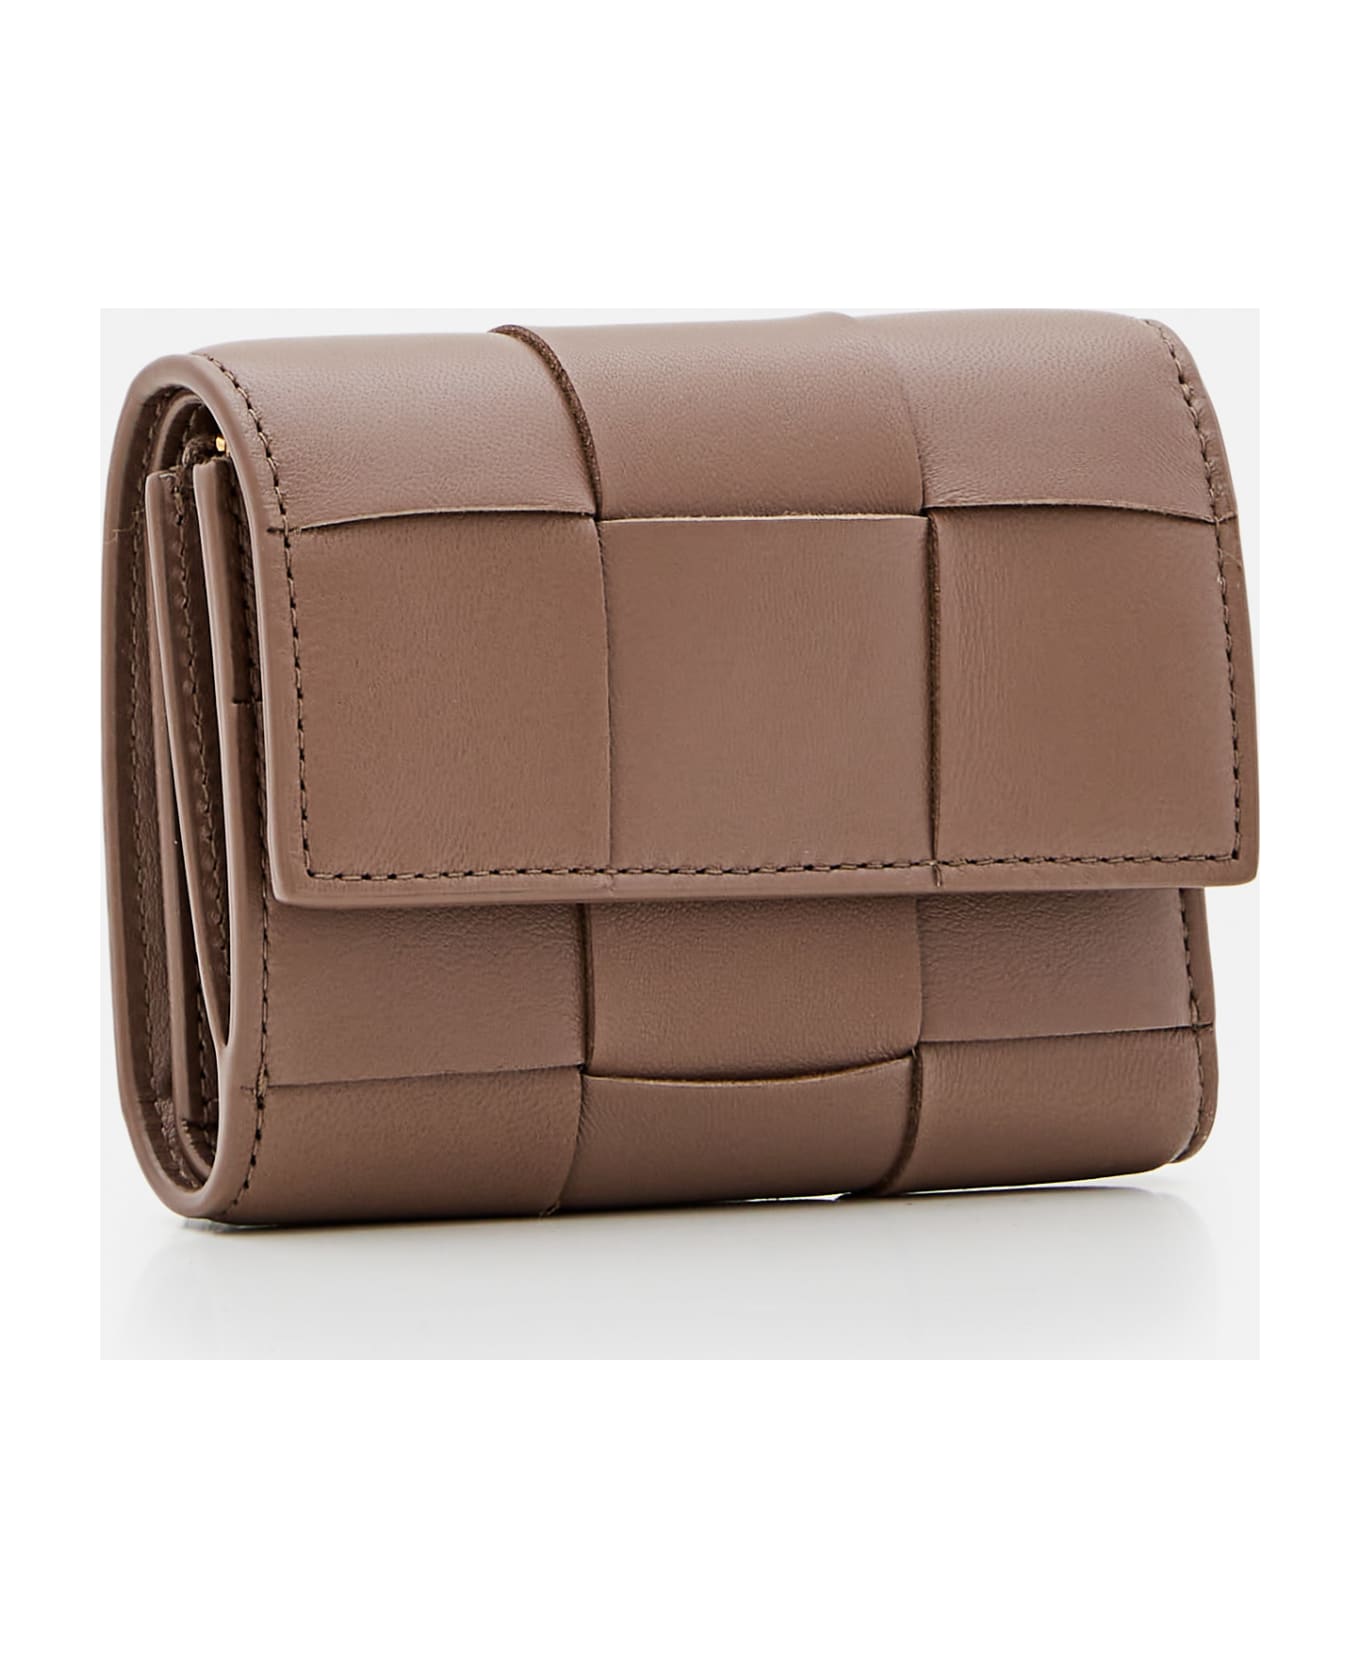 Bottega Veneta Tri-fold Leather Wallet - Brown